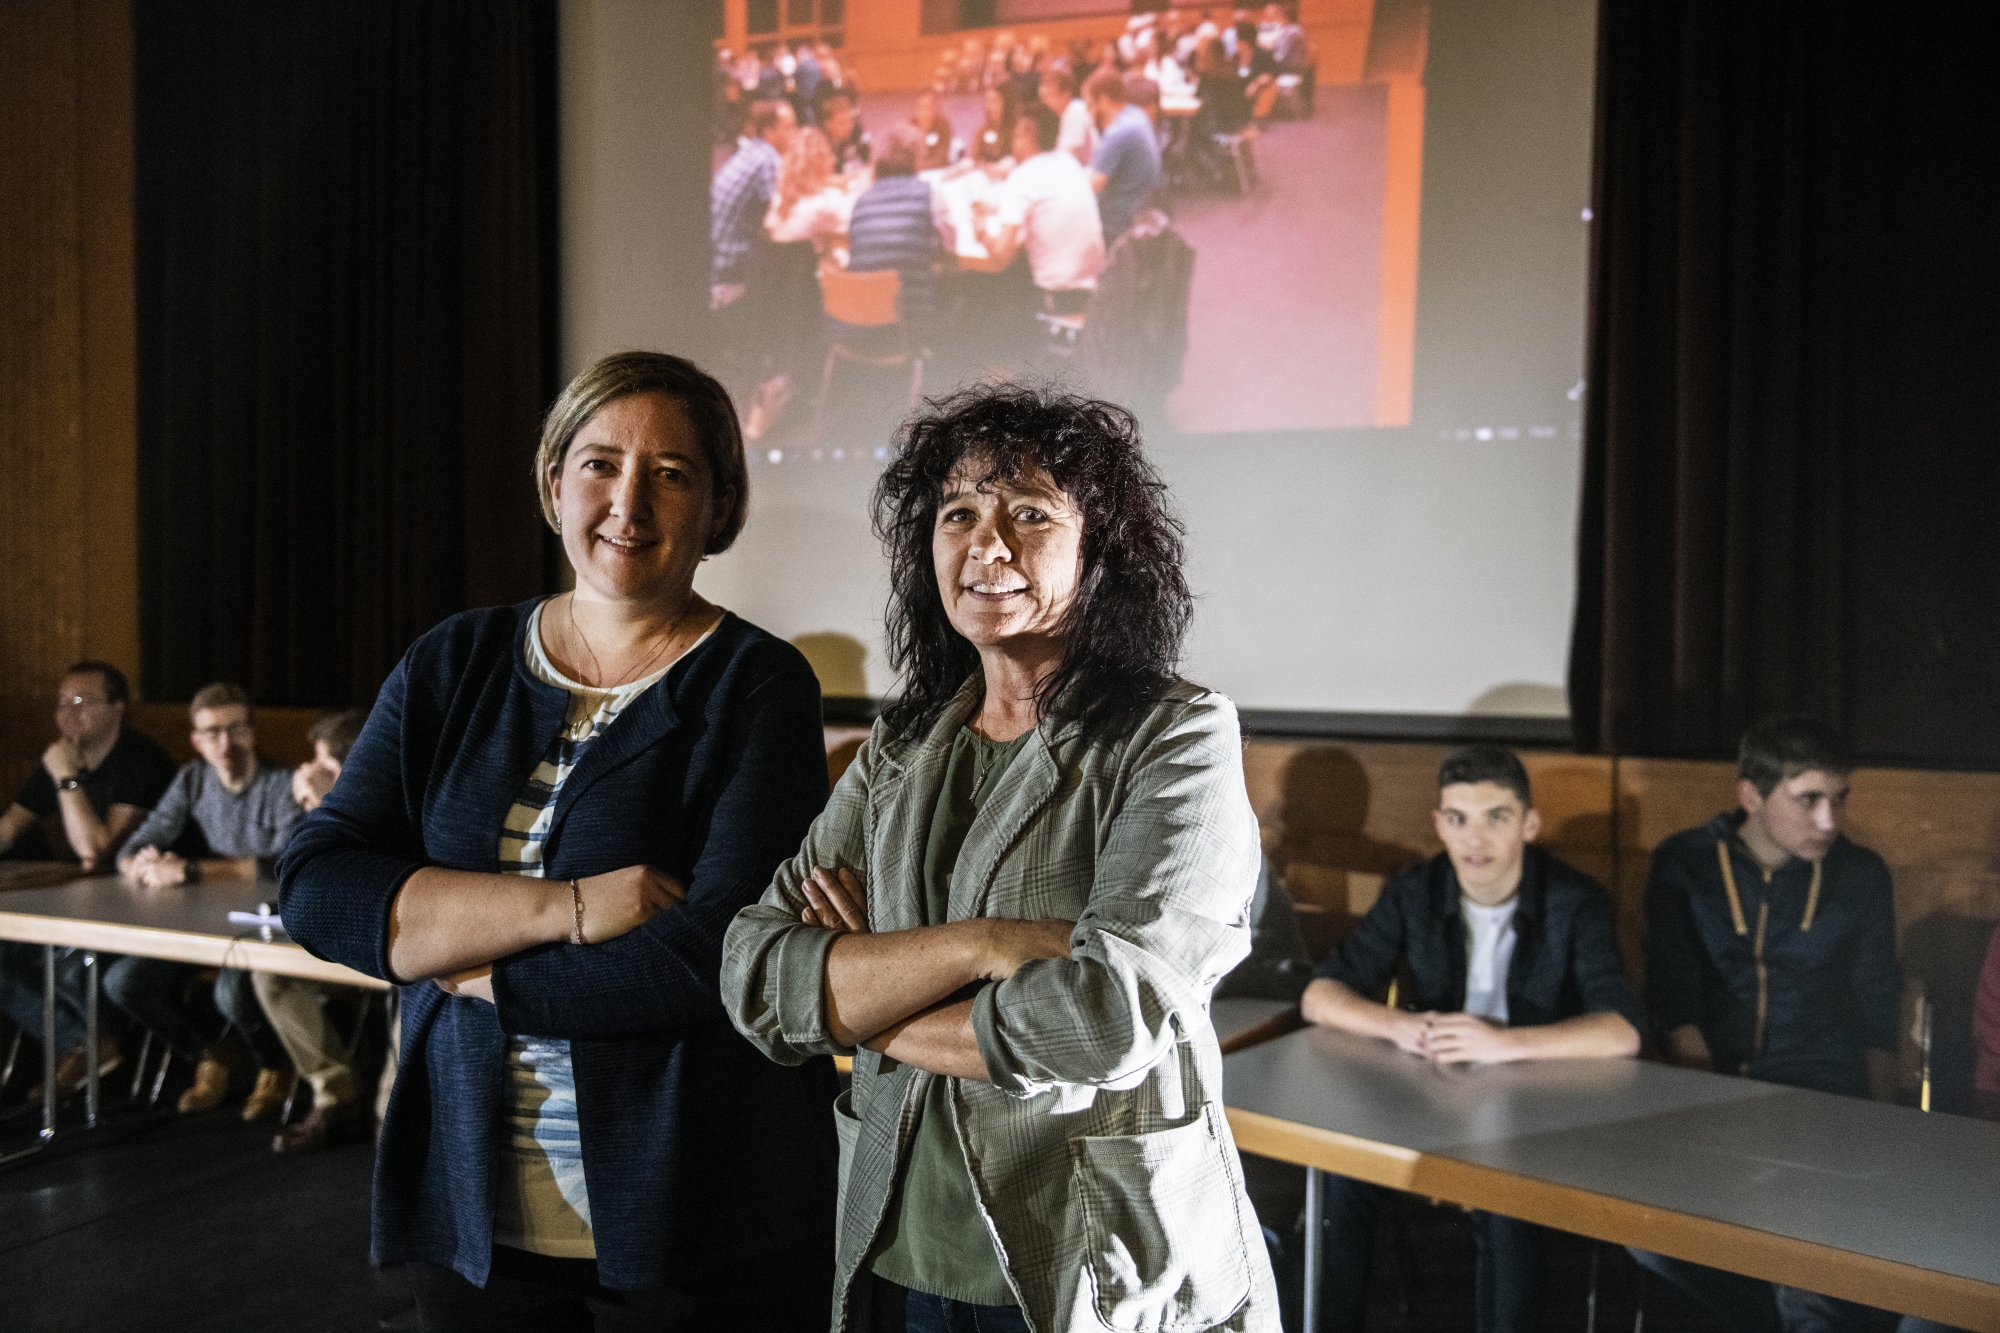 Nicole Fumeaux (à droite) a lancé cette démarche participative en collaboration avec 150 citoyens ainsi que la vice-présidente de la commune, Geneviève Pralong (à gauche).